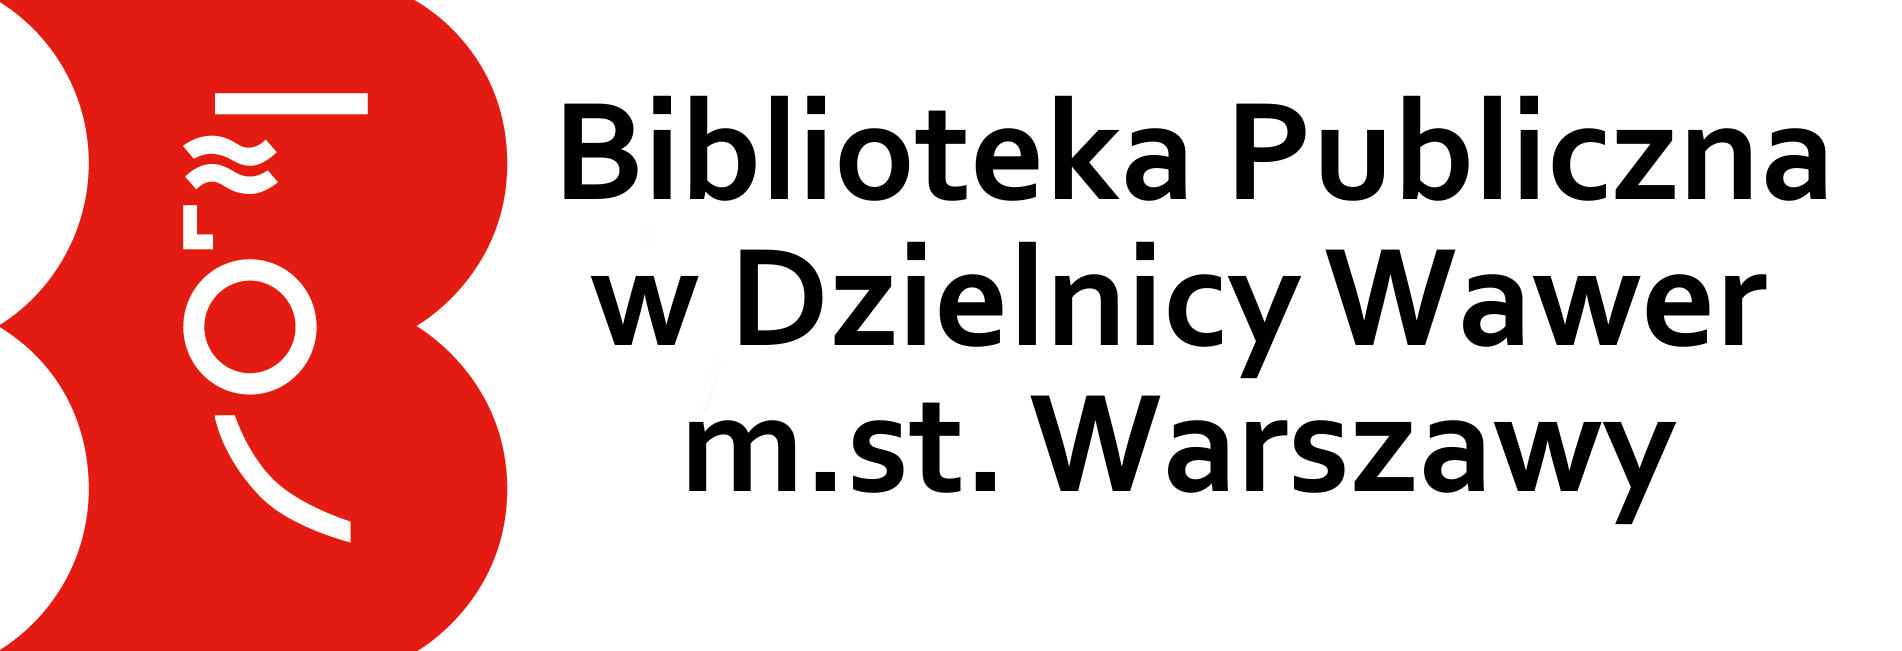 Biblioteka Publiczna w dzielnicy Wawer m.st. Warszawa